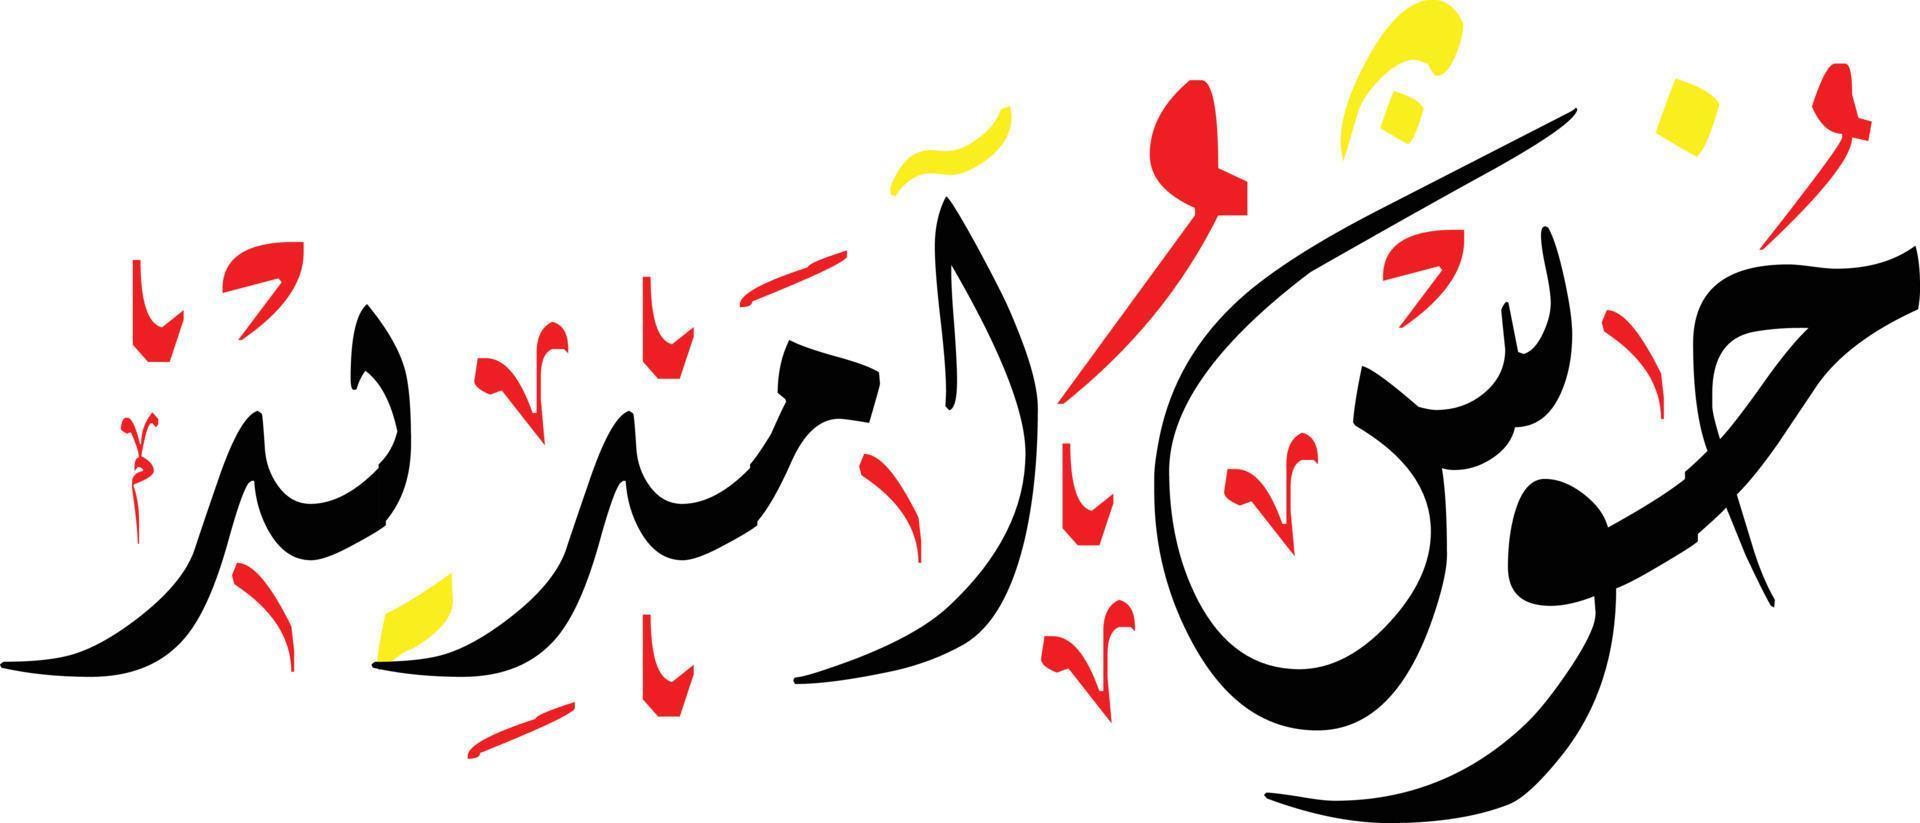 Khush Aamdeed Hand Written Nastaliq Urdu Calligraphy,Khush Amdeed 3d Nastaliq Calligraphy Vector Image,Arabic Calligraphy urdu arabic font style,urdu arabic lettring,,khush amdeed png image,